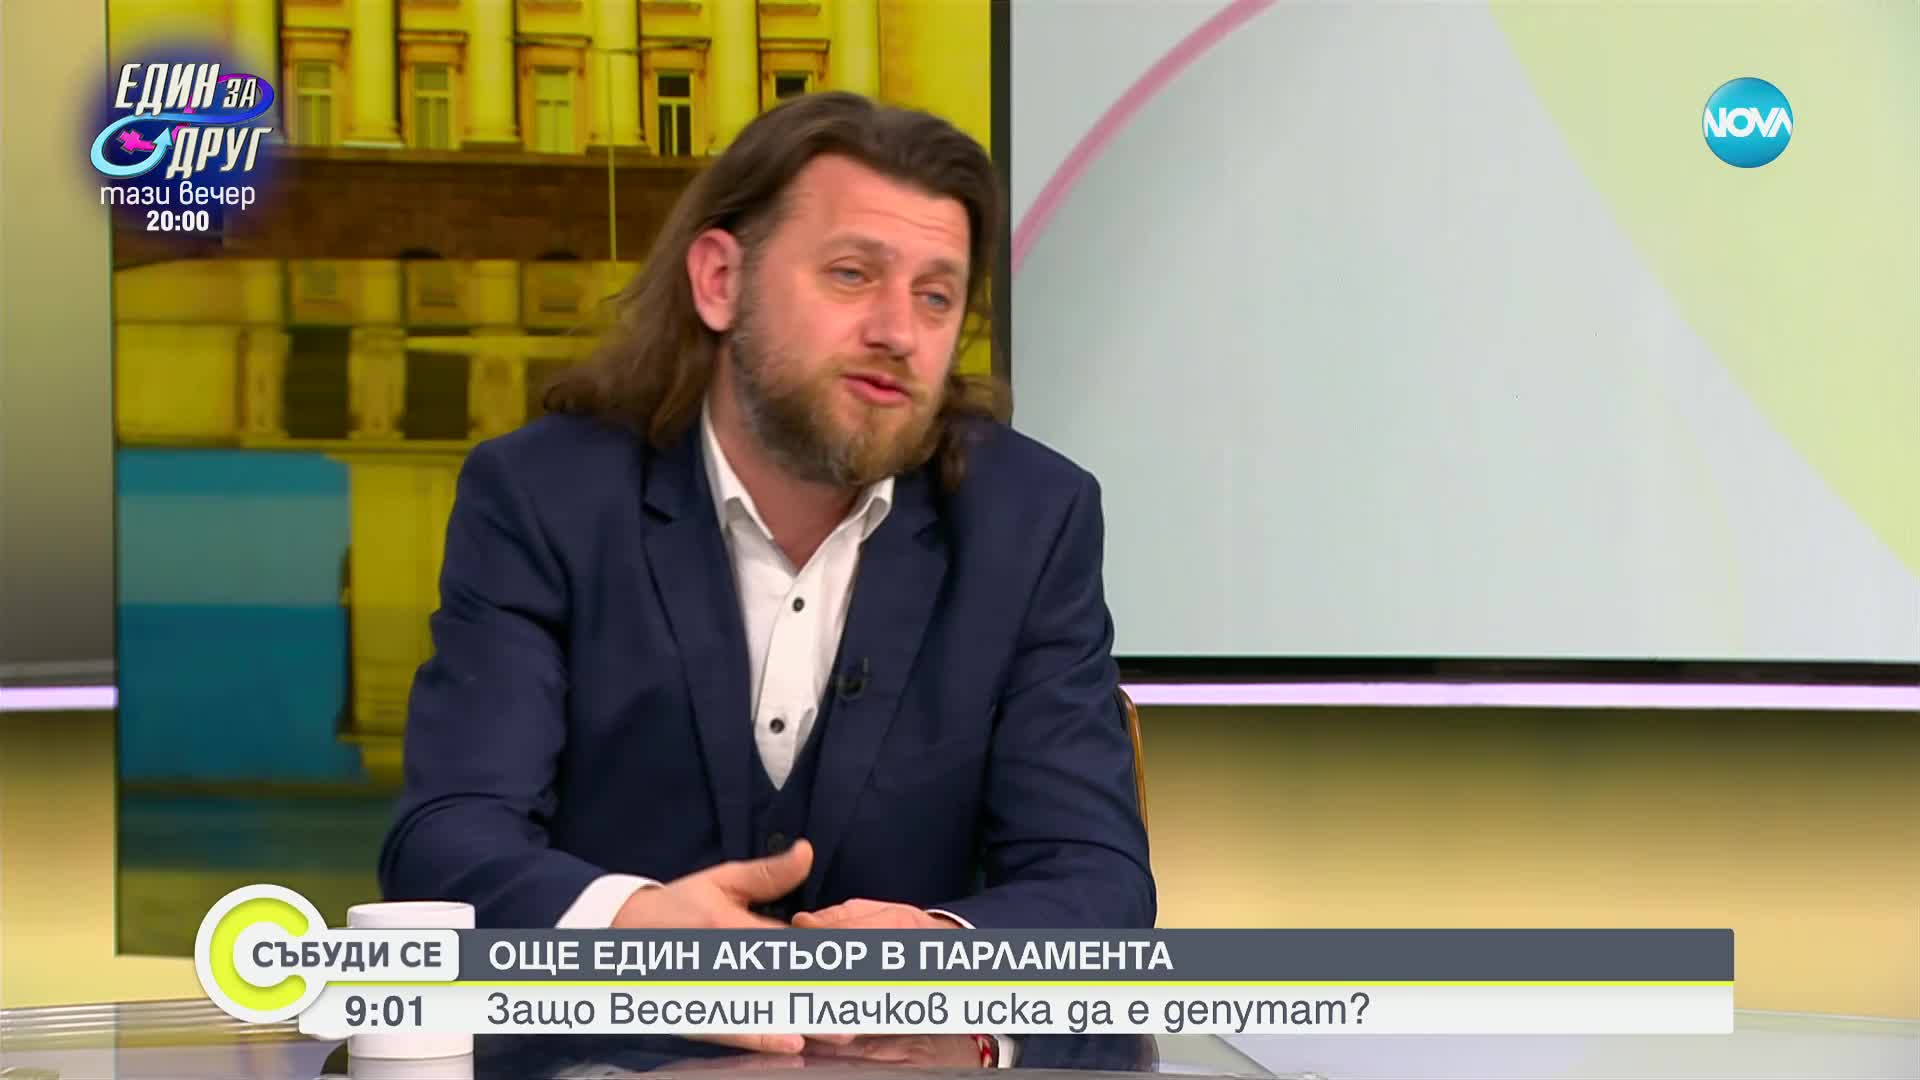 Веселин Плачков: Целта ми не е да съм депутат, а да бъда полезен на хората